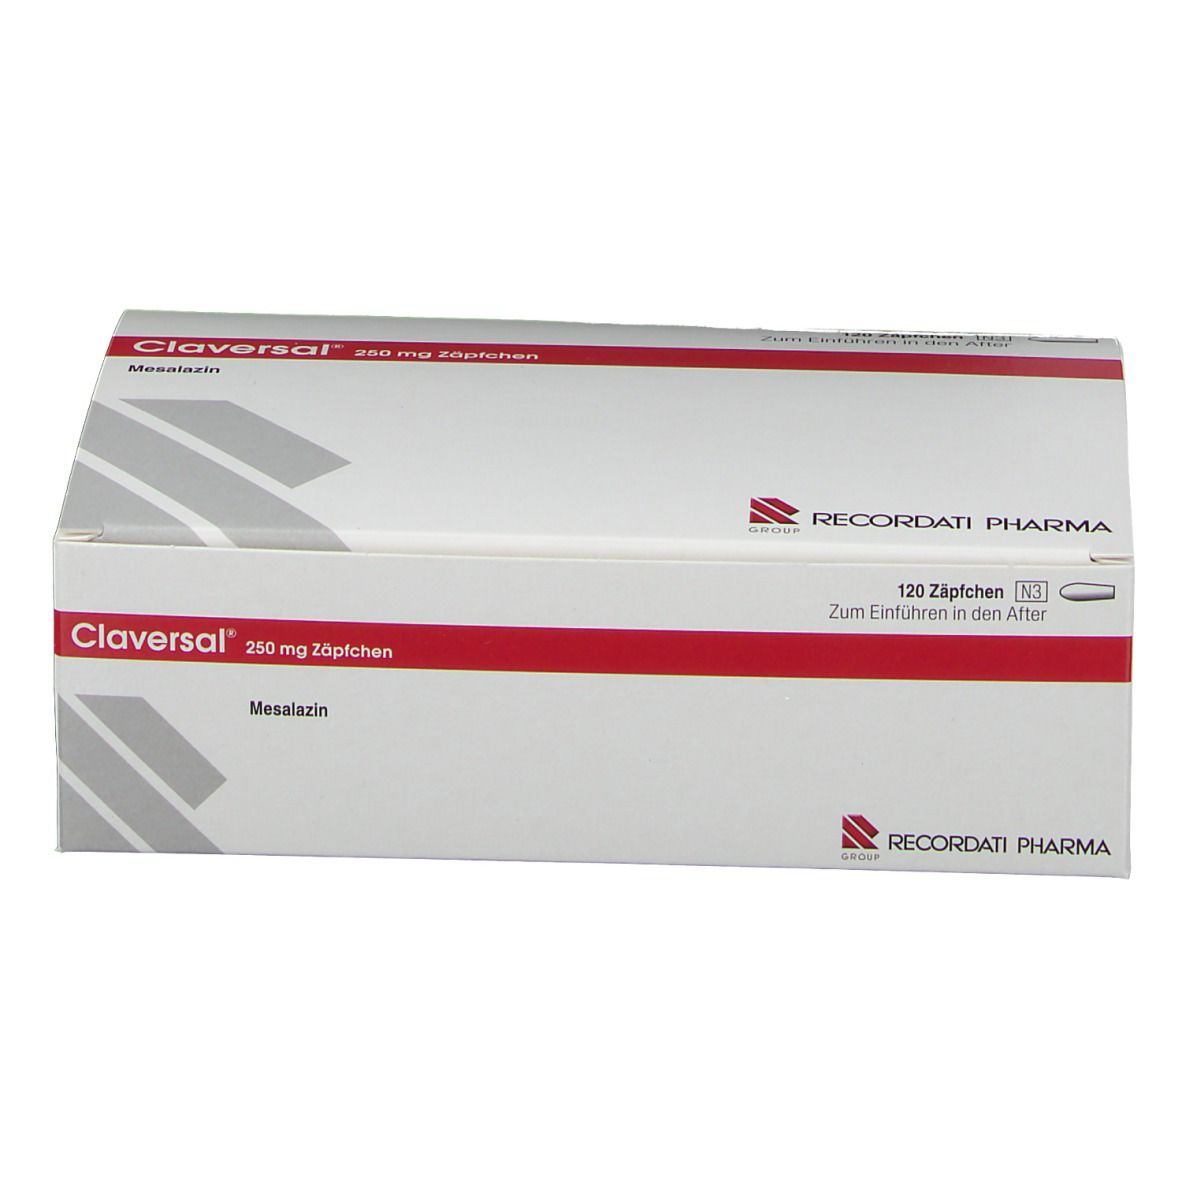 Claversal® 250 mg Zäpfchen